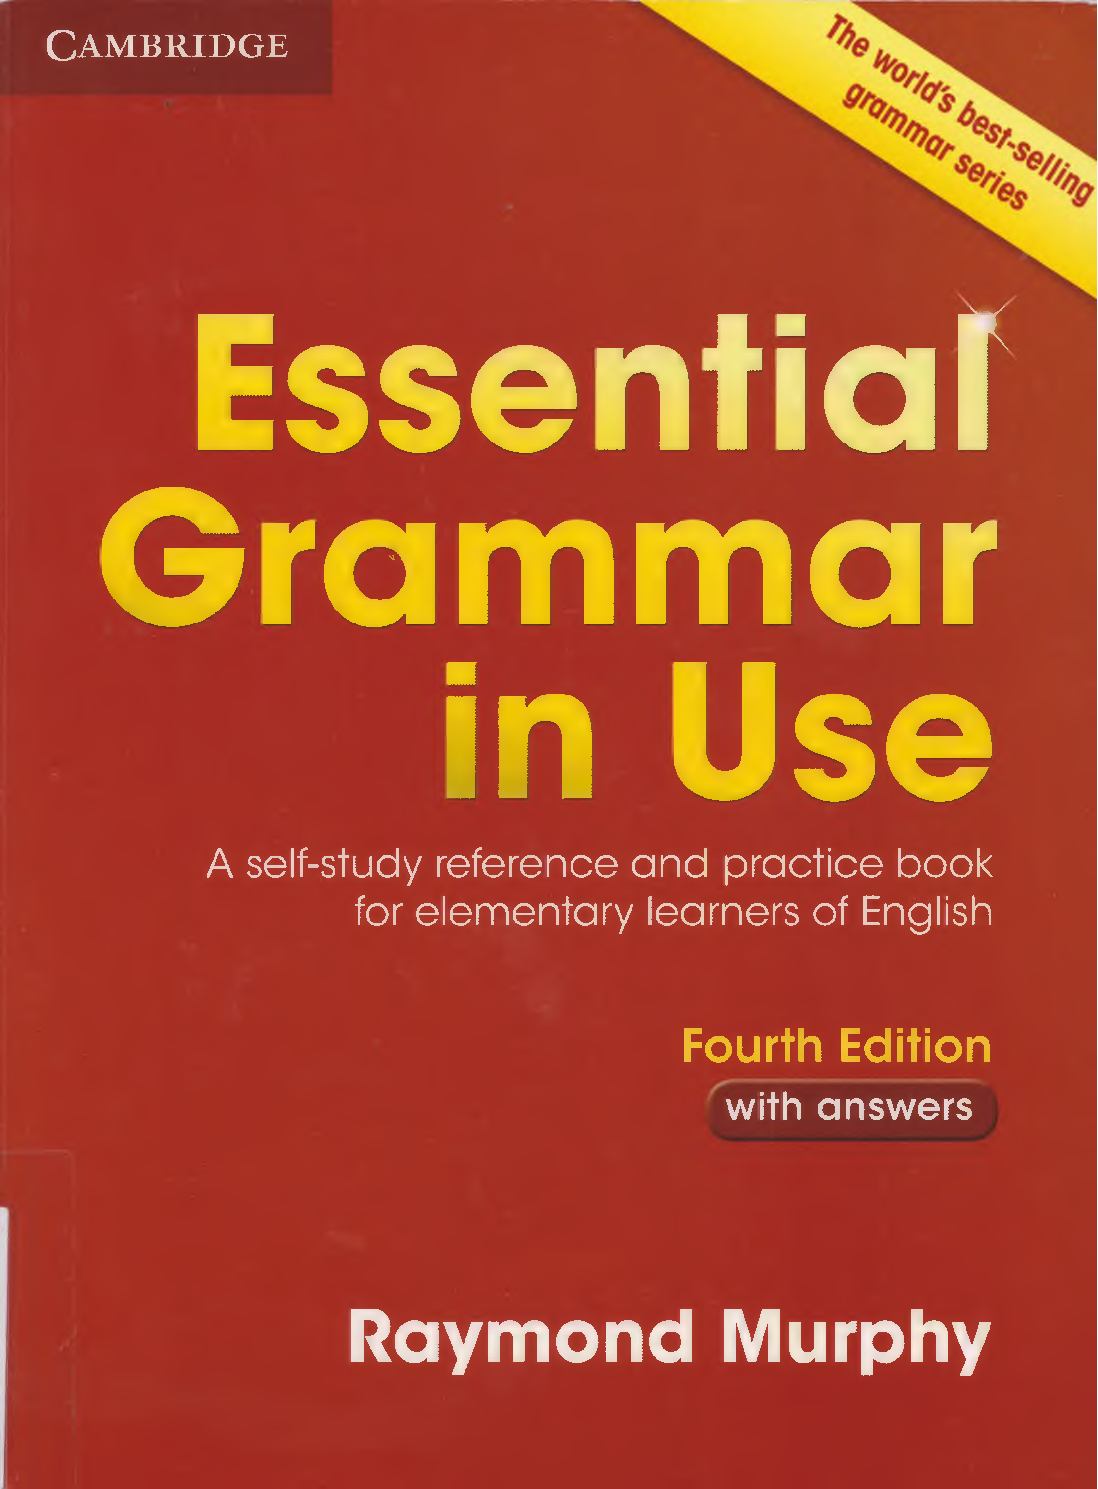 Sách Essential Grammar In Use | Xem online, tải PDF miễn phí (trang 1)